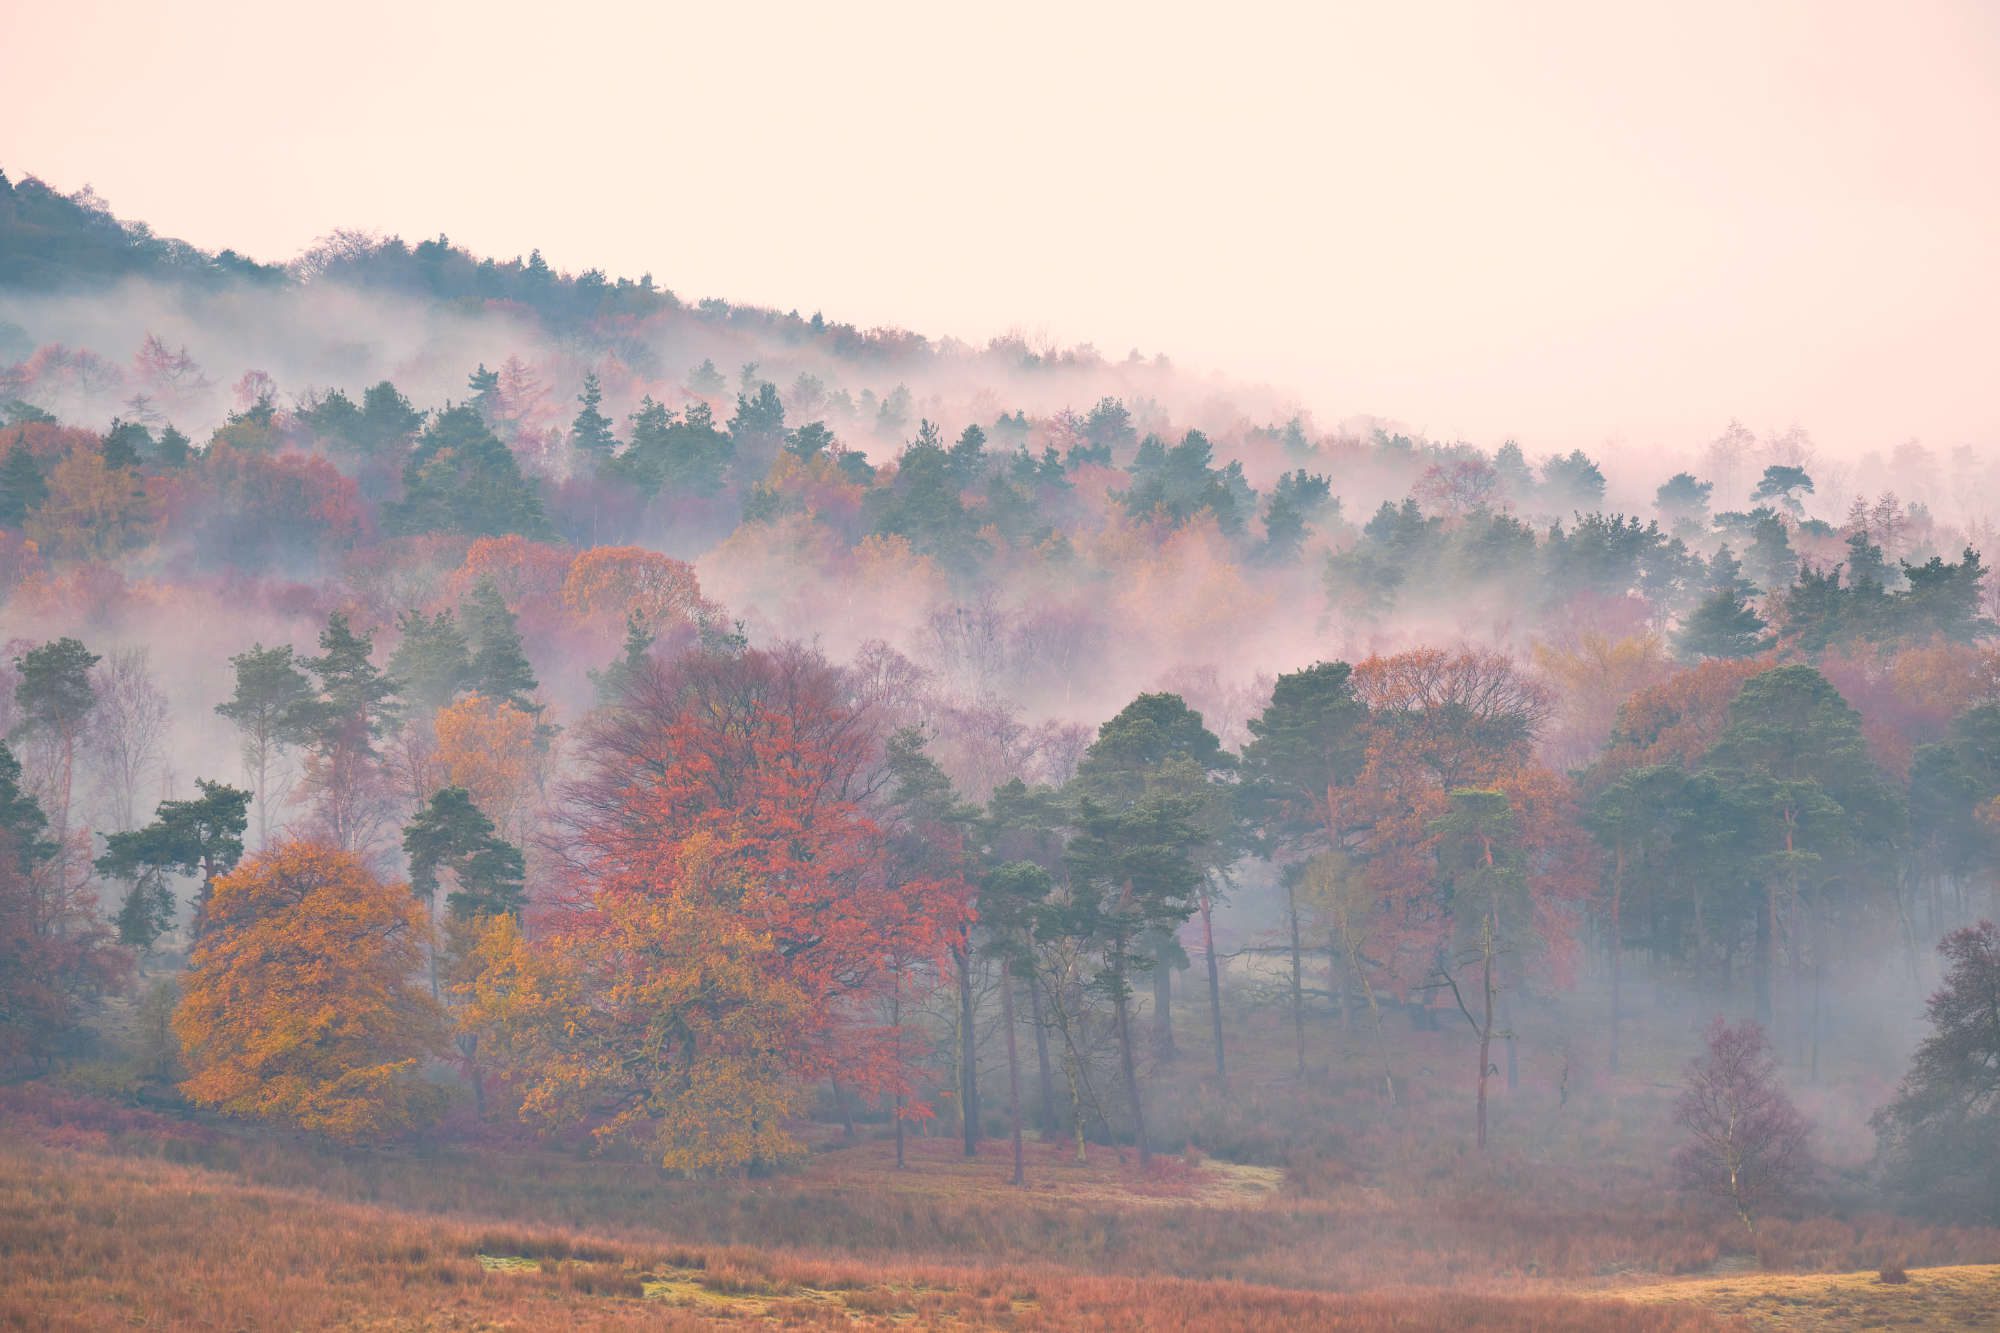 Early morning mist in trees, Longshaw, Peak District, UK